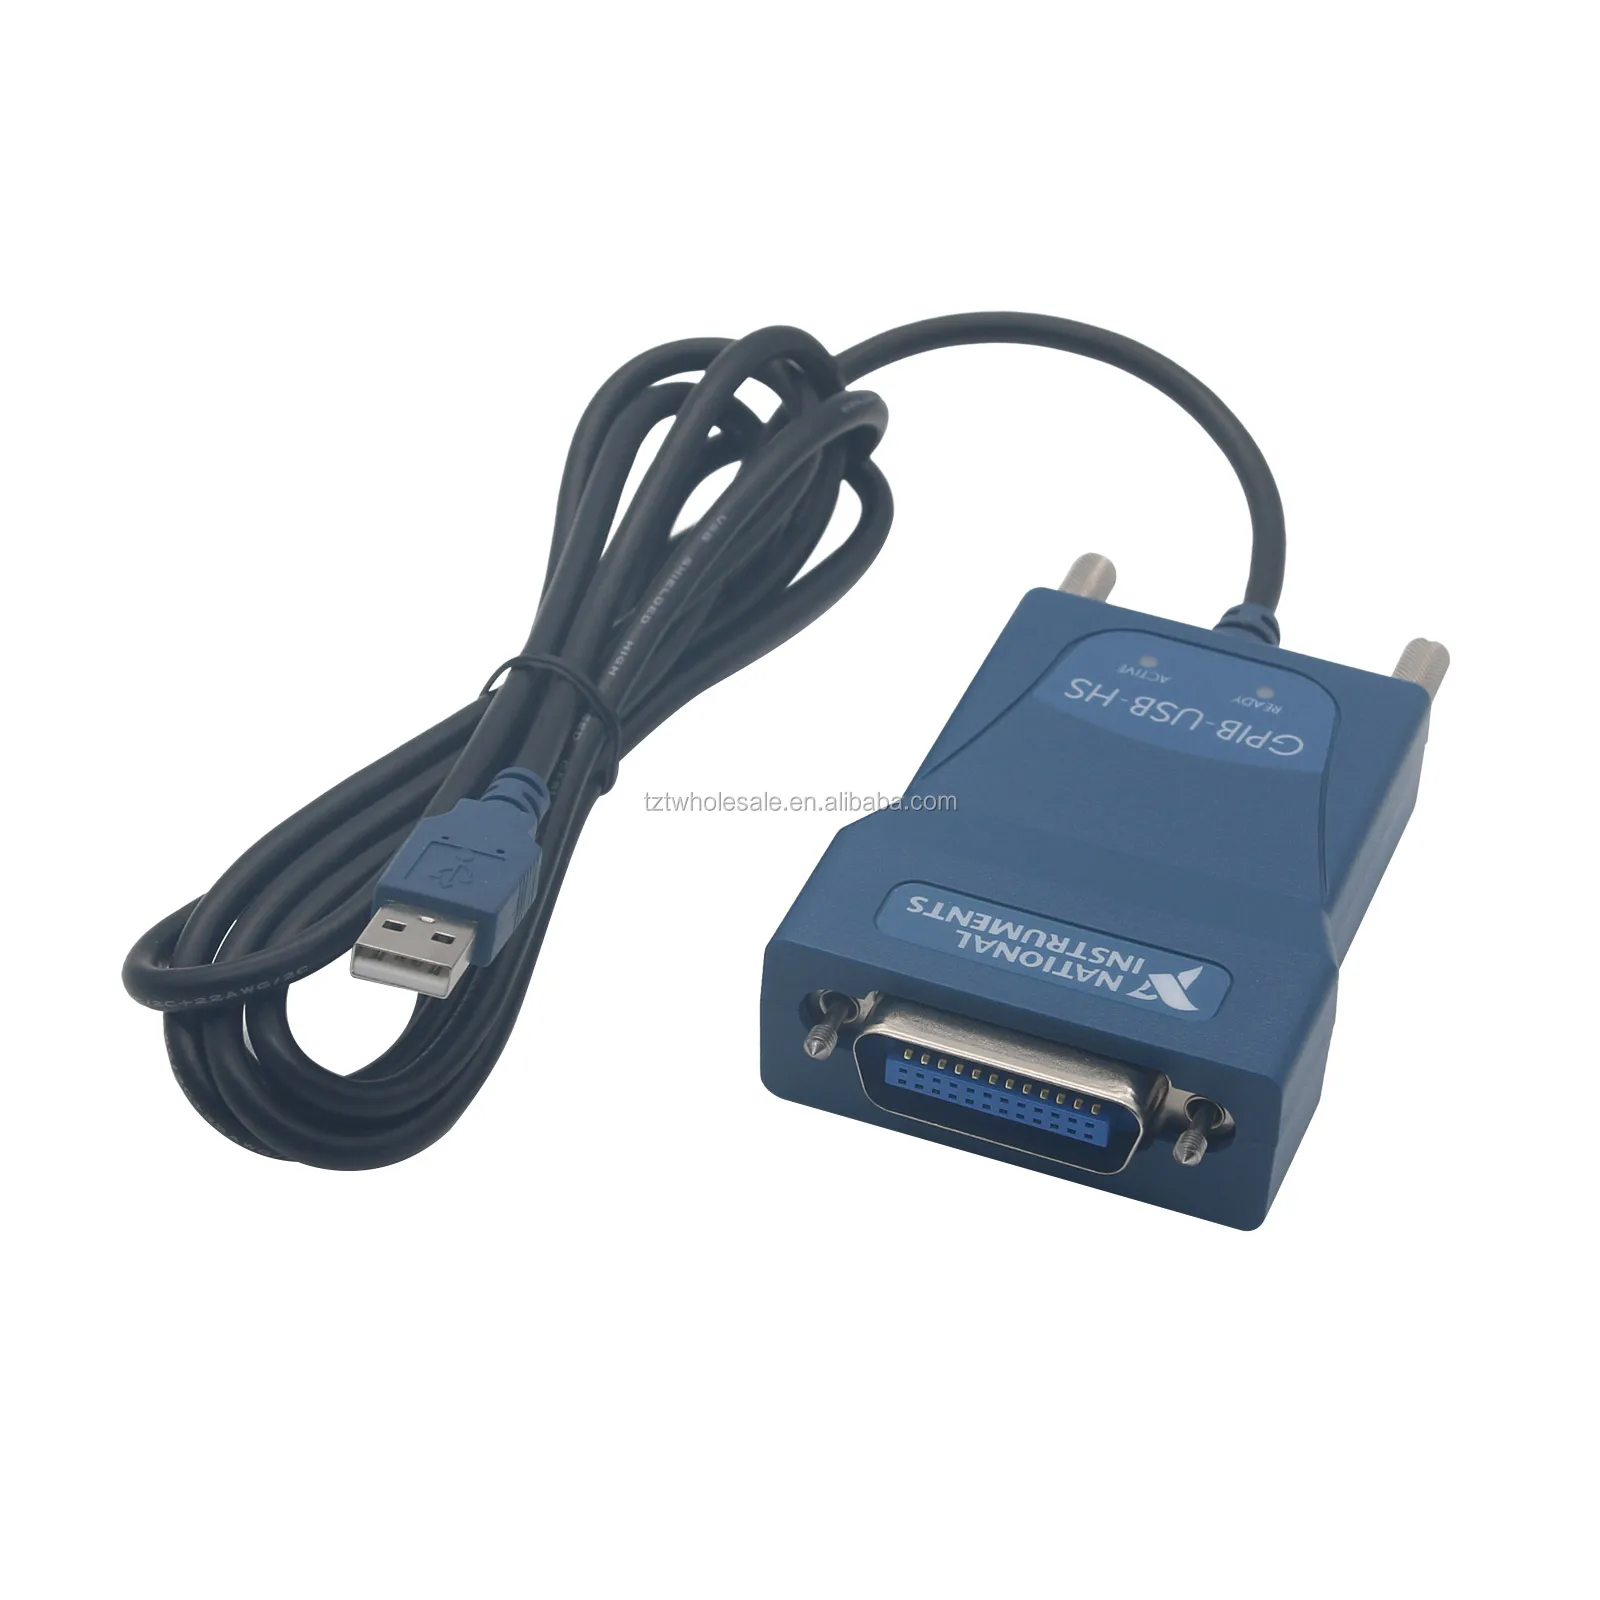 期間限定特価品 NI GPIB-USB-HS USB-GPIBコントローラ PC周辺機器